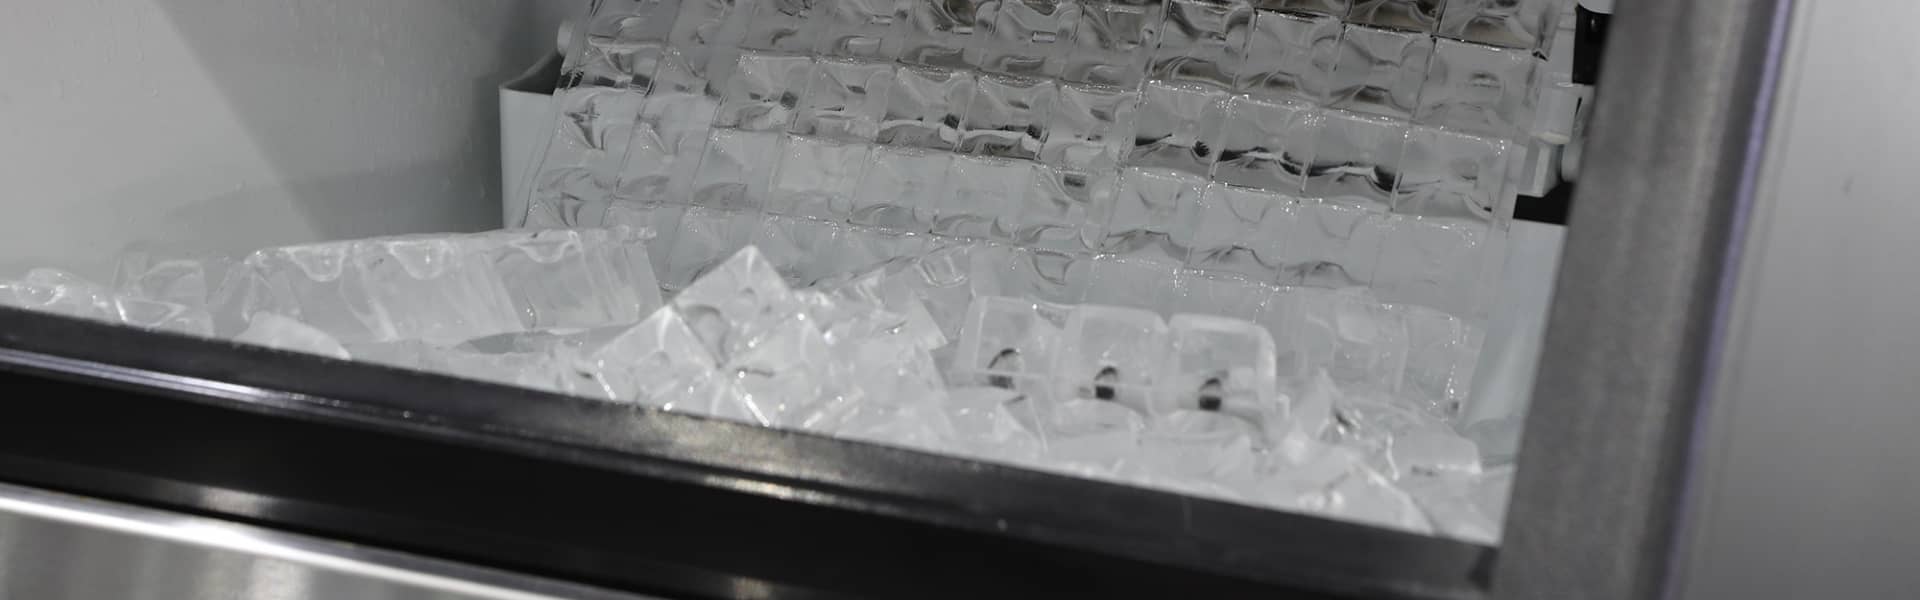 Plan rapproché de cubes de glace dans une machine à glace commerciale